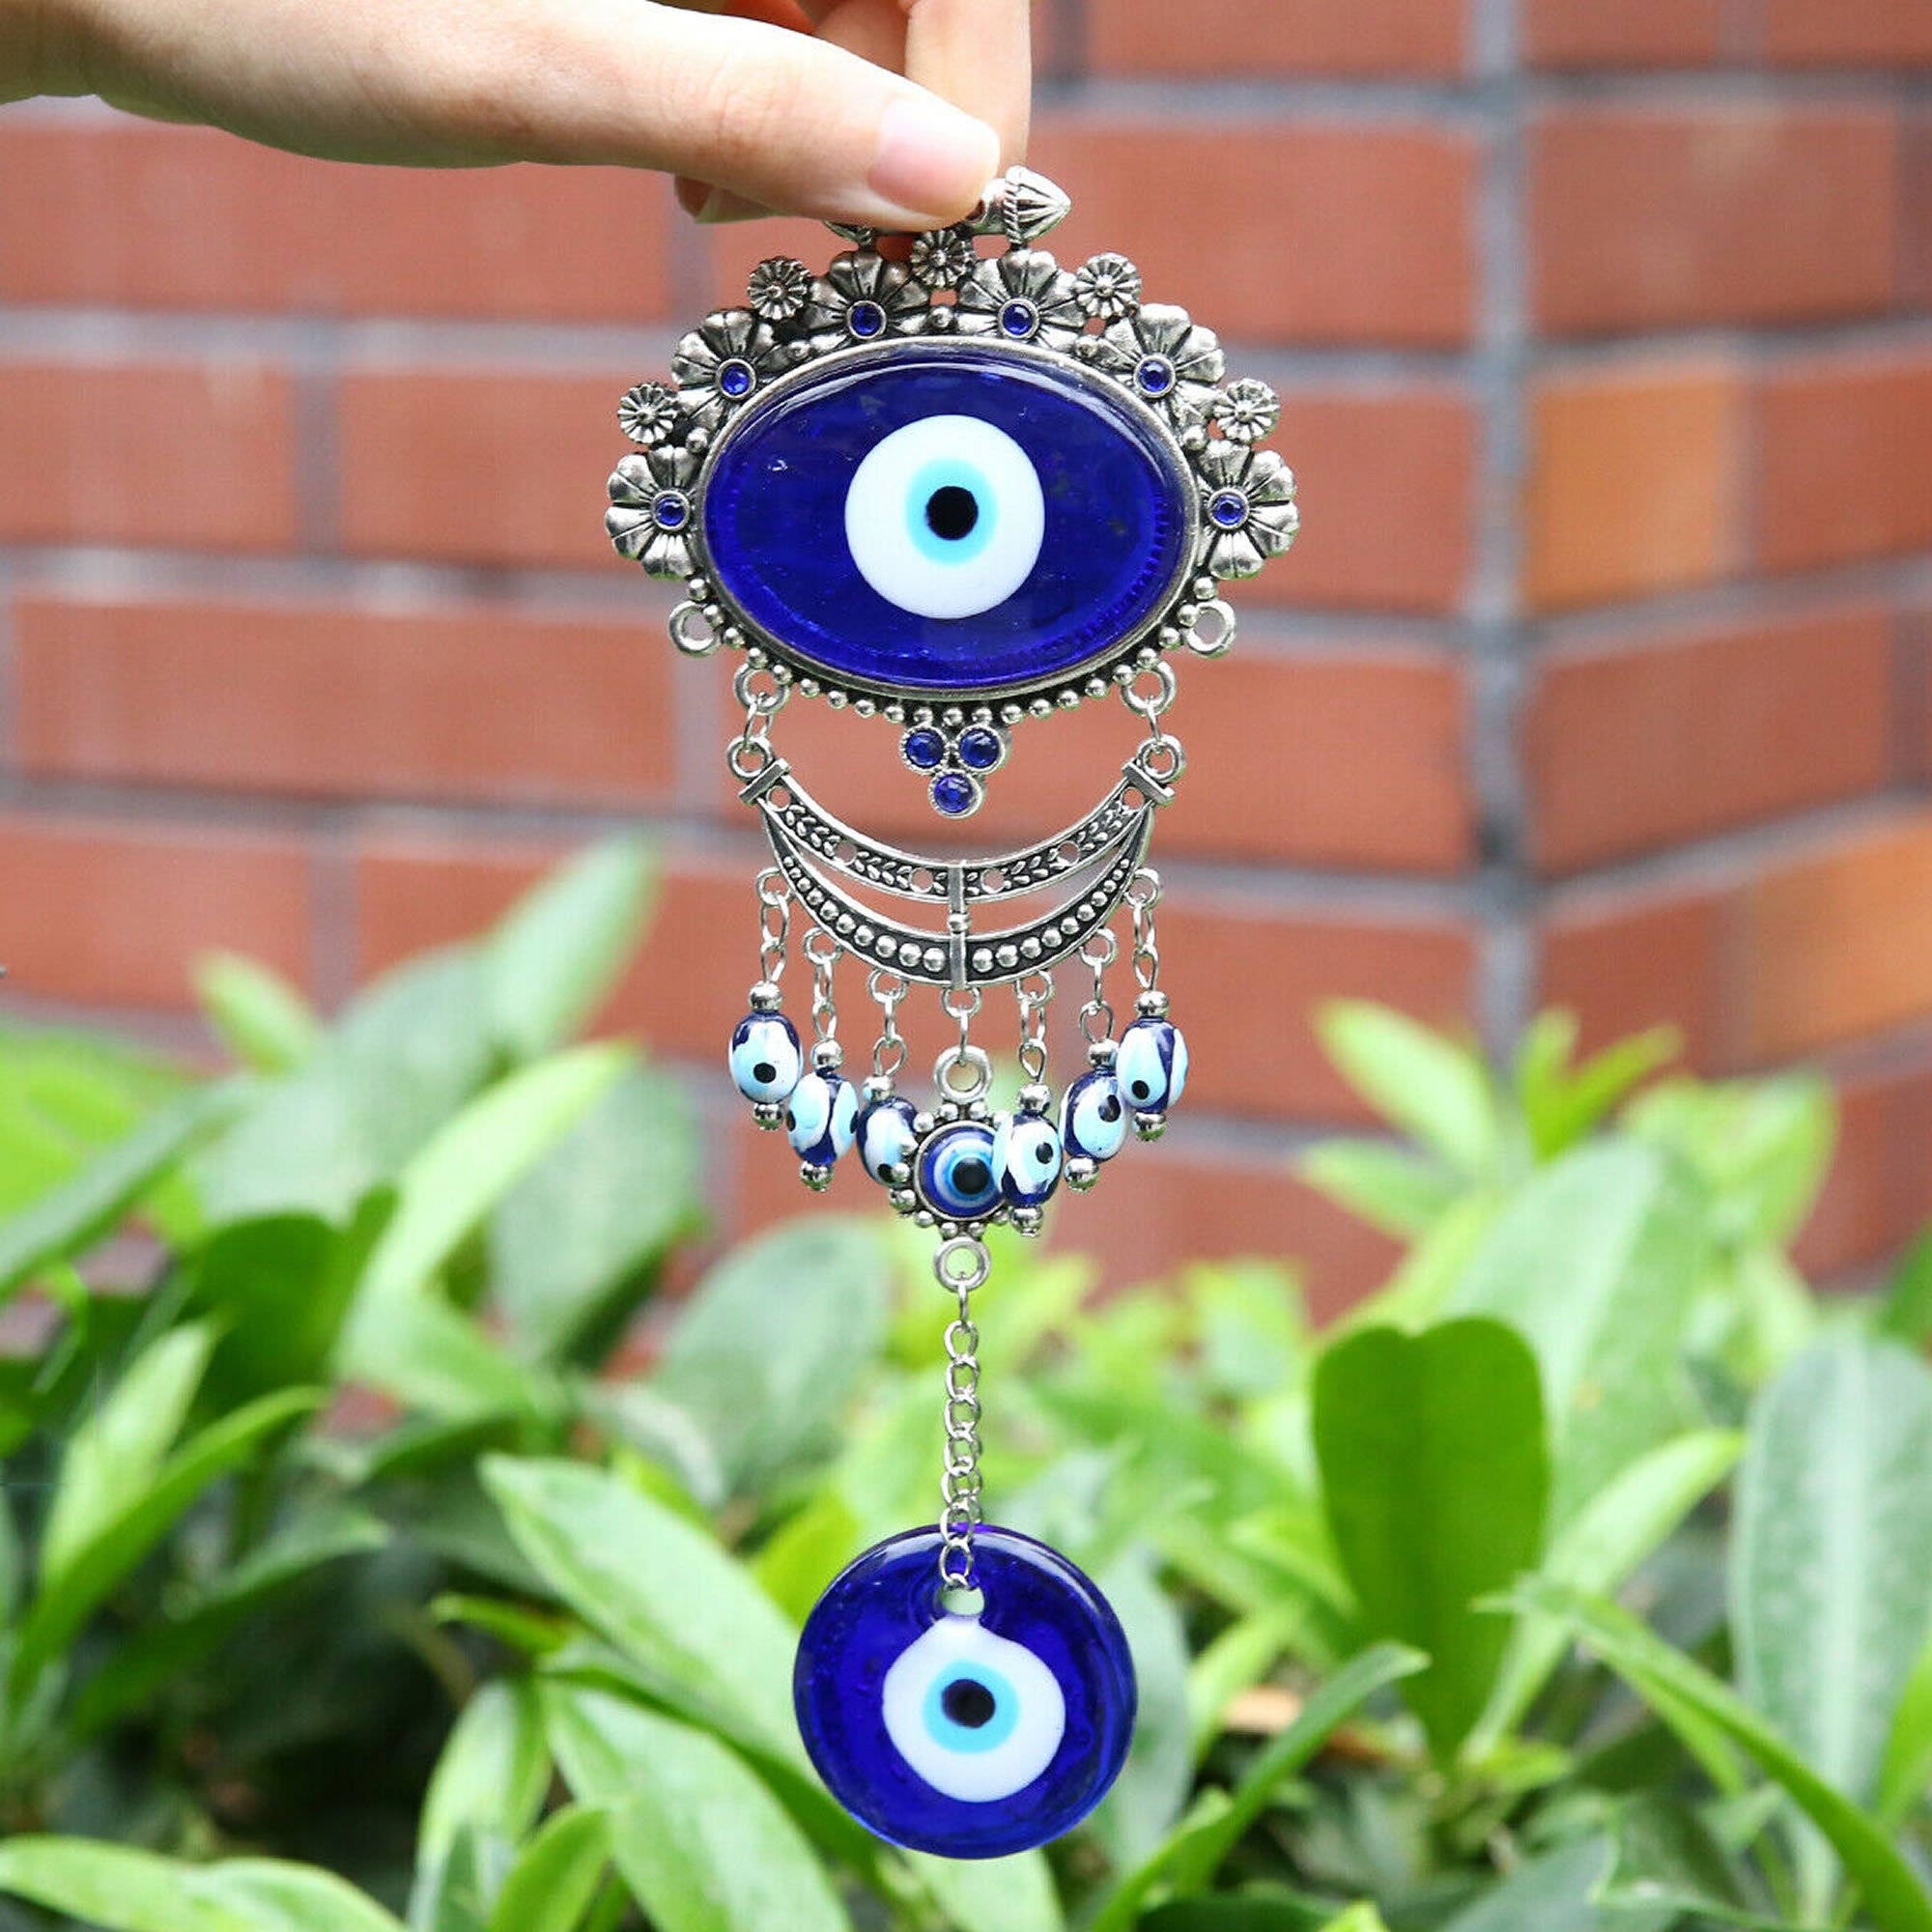 Türkisch Blau Evil Eye Schlüsselanhänger Auto Schlüsselanhänger Amulett  Glücksbringer Hängender Anhänger